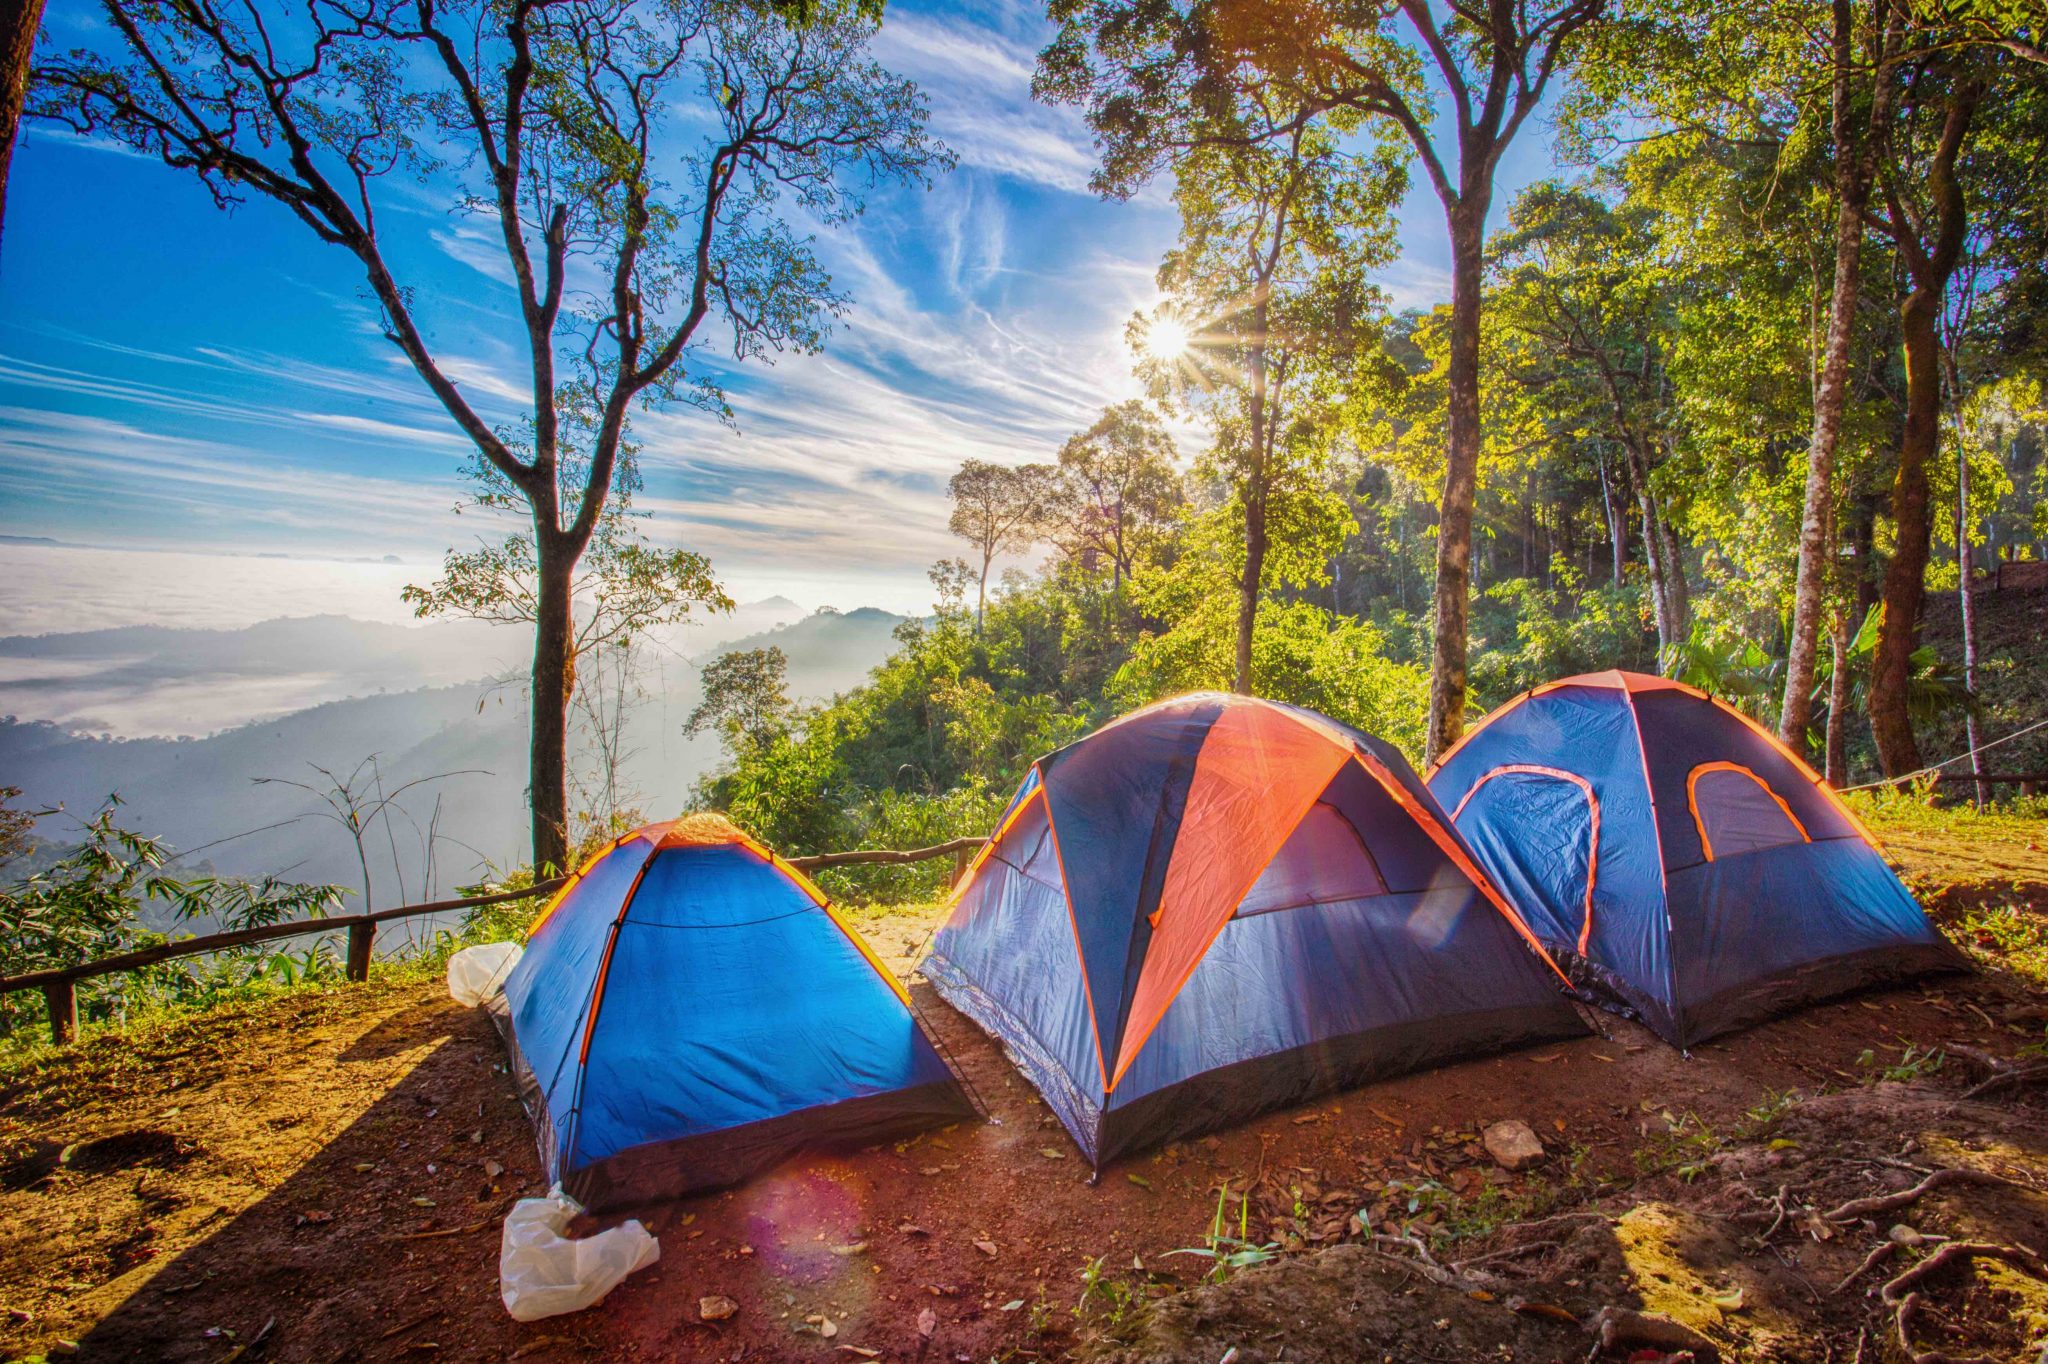 Camping outdoor. Палатка Ronin Camp. Палатка на природе. Туристическая палатка на природе. Палаточный кемпинг.